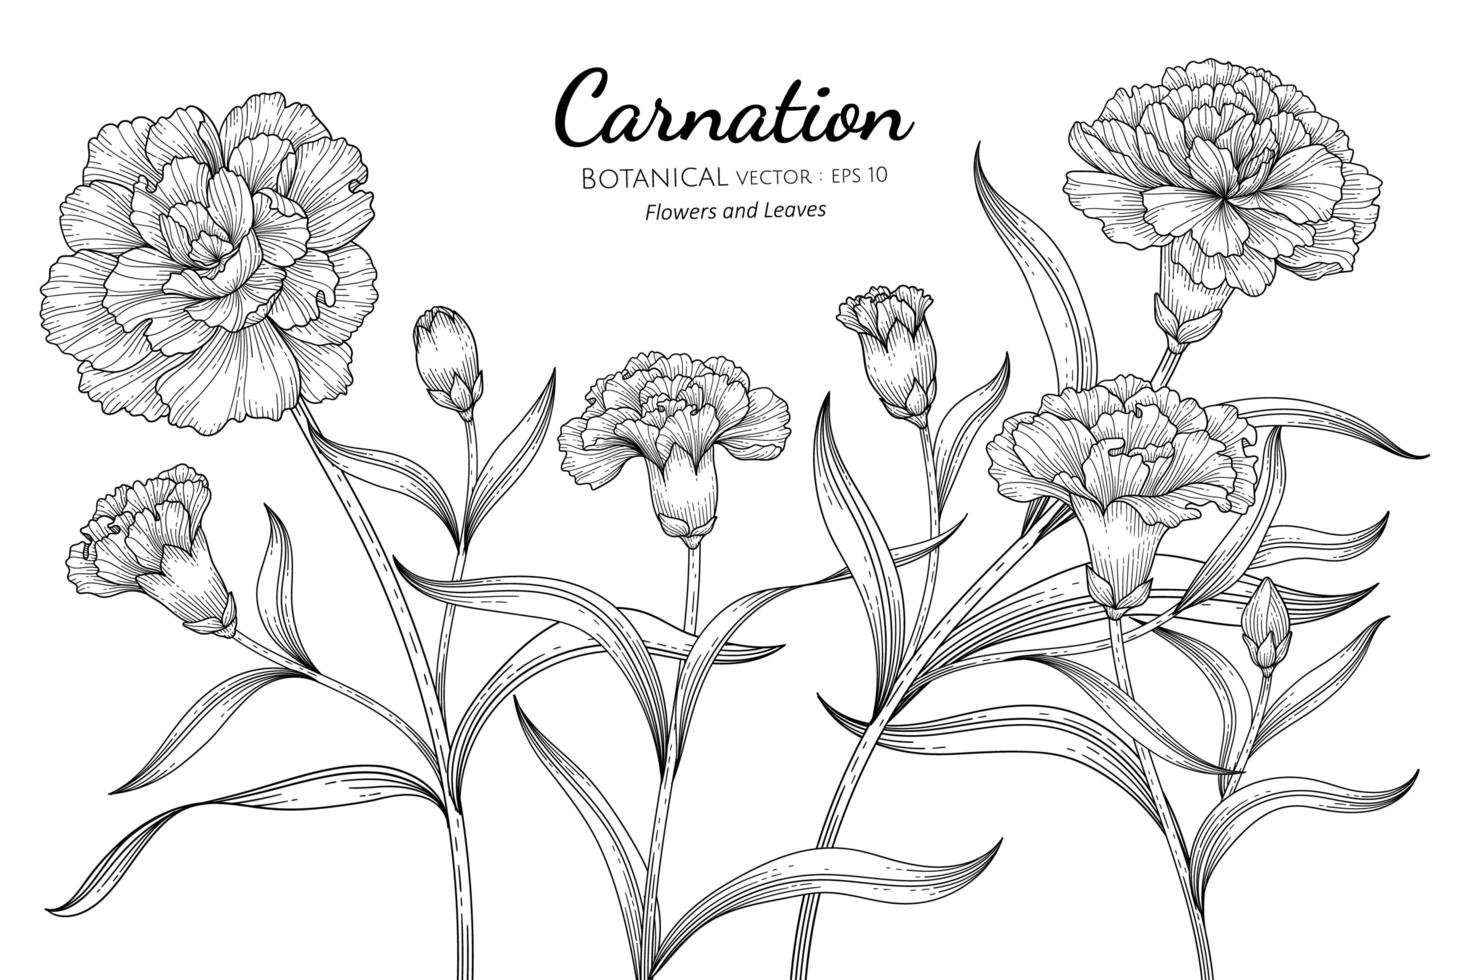 nejlika blomma och blad handritad botanisk illustration med konturteckningar på vit bakgrund vektor